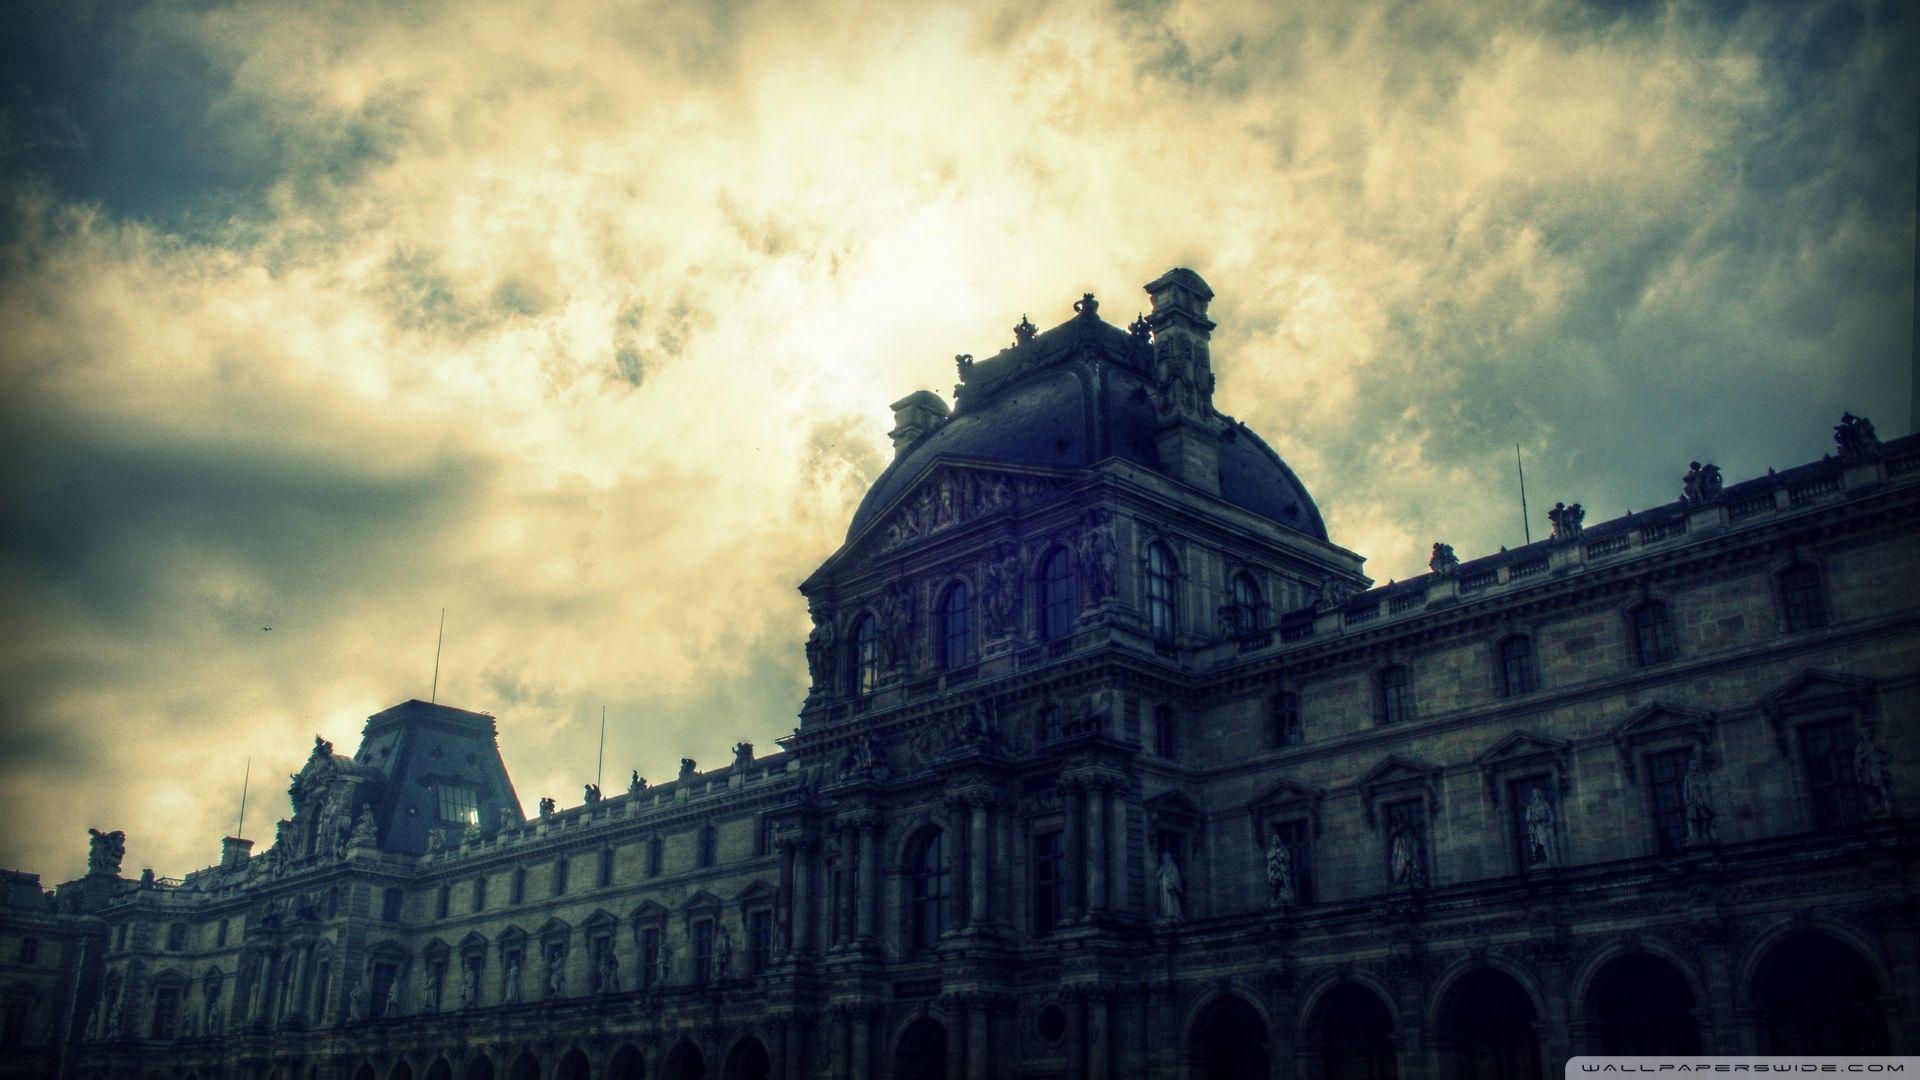 Sky of Musee du Louvre HD desktop wallpaper, Widescreen, High